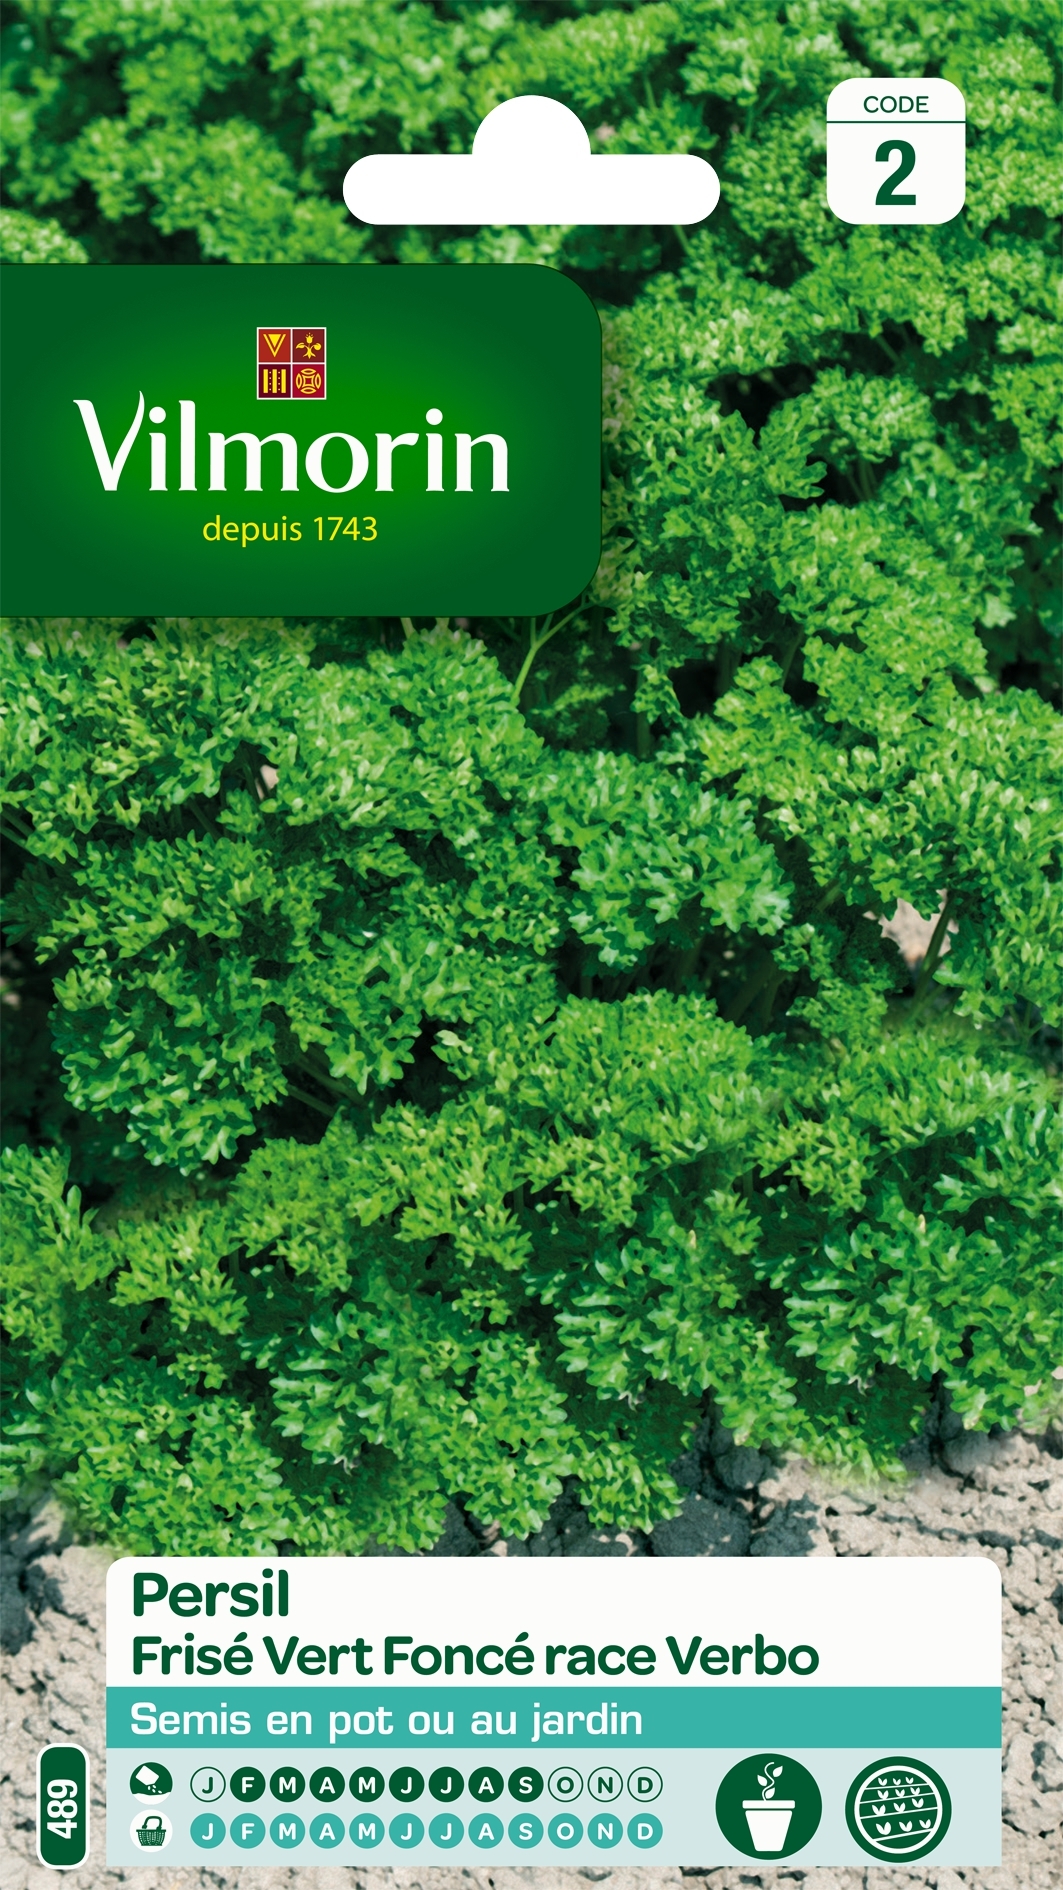 Persil frisé race Verbo (sélection Vilmorin) - Vilmorin